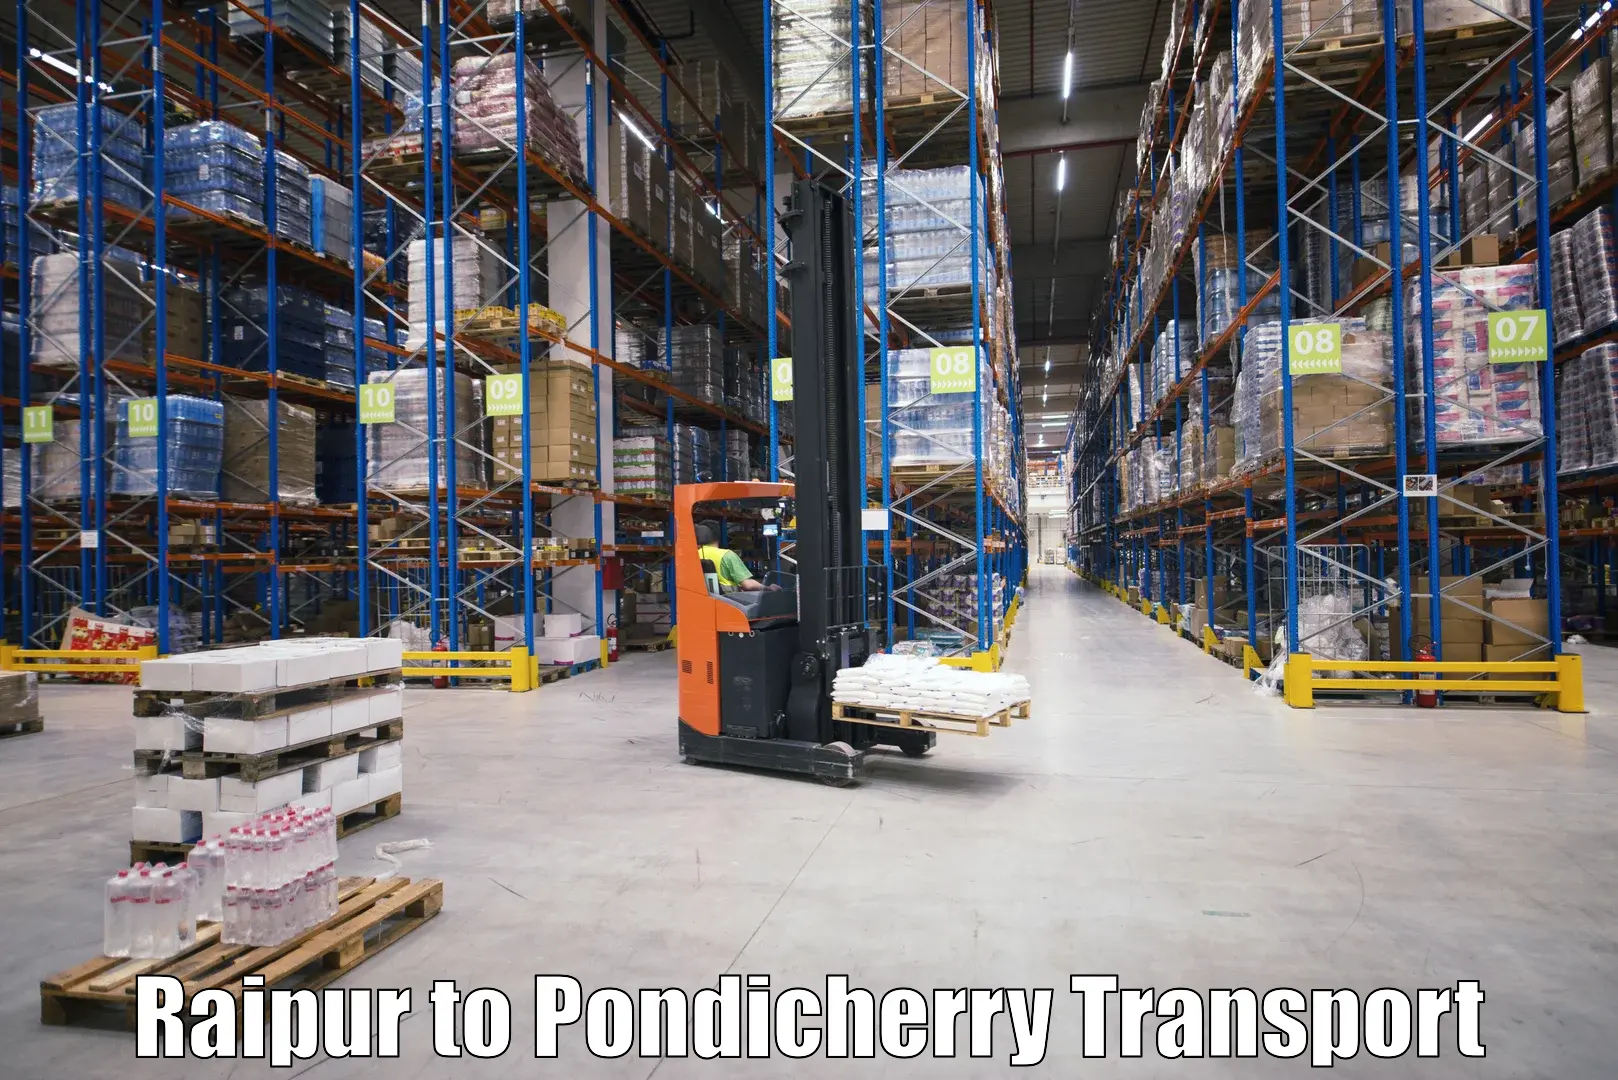 Online transport service Raipur to Pondicherry